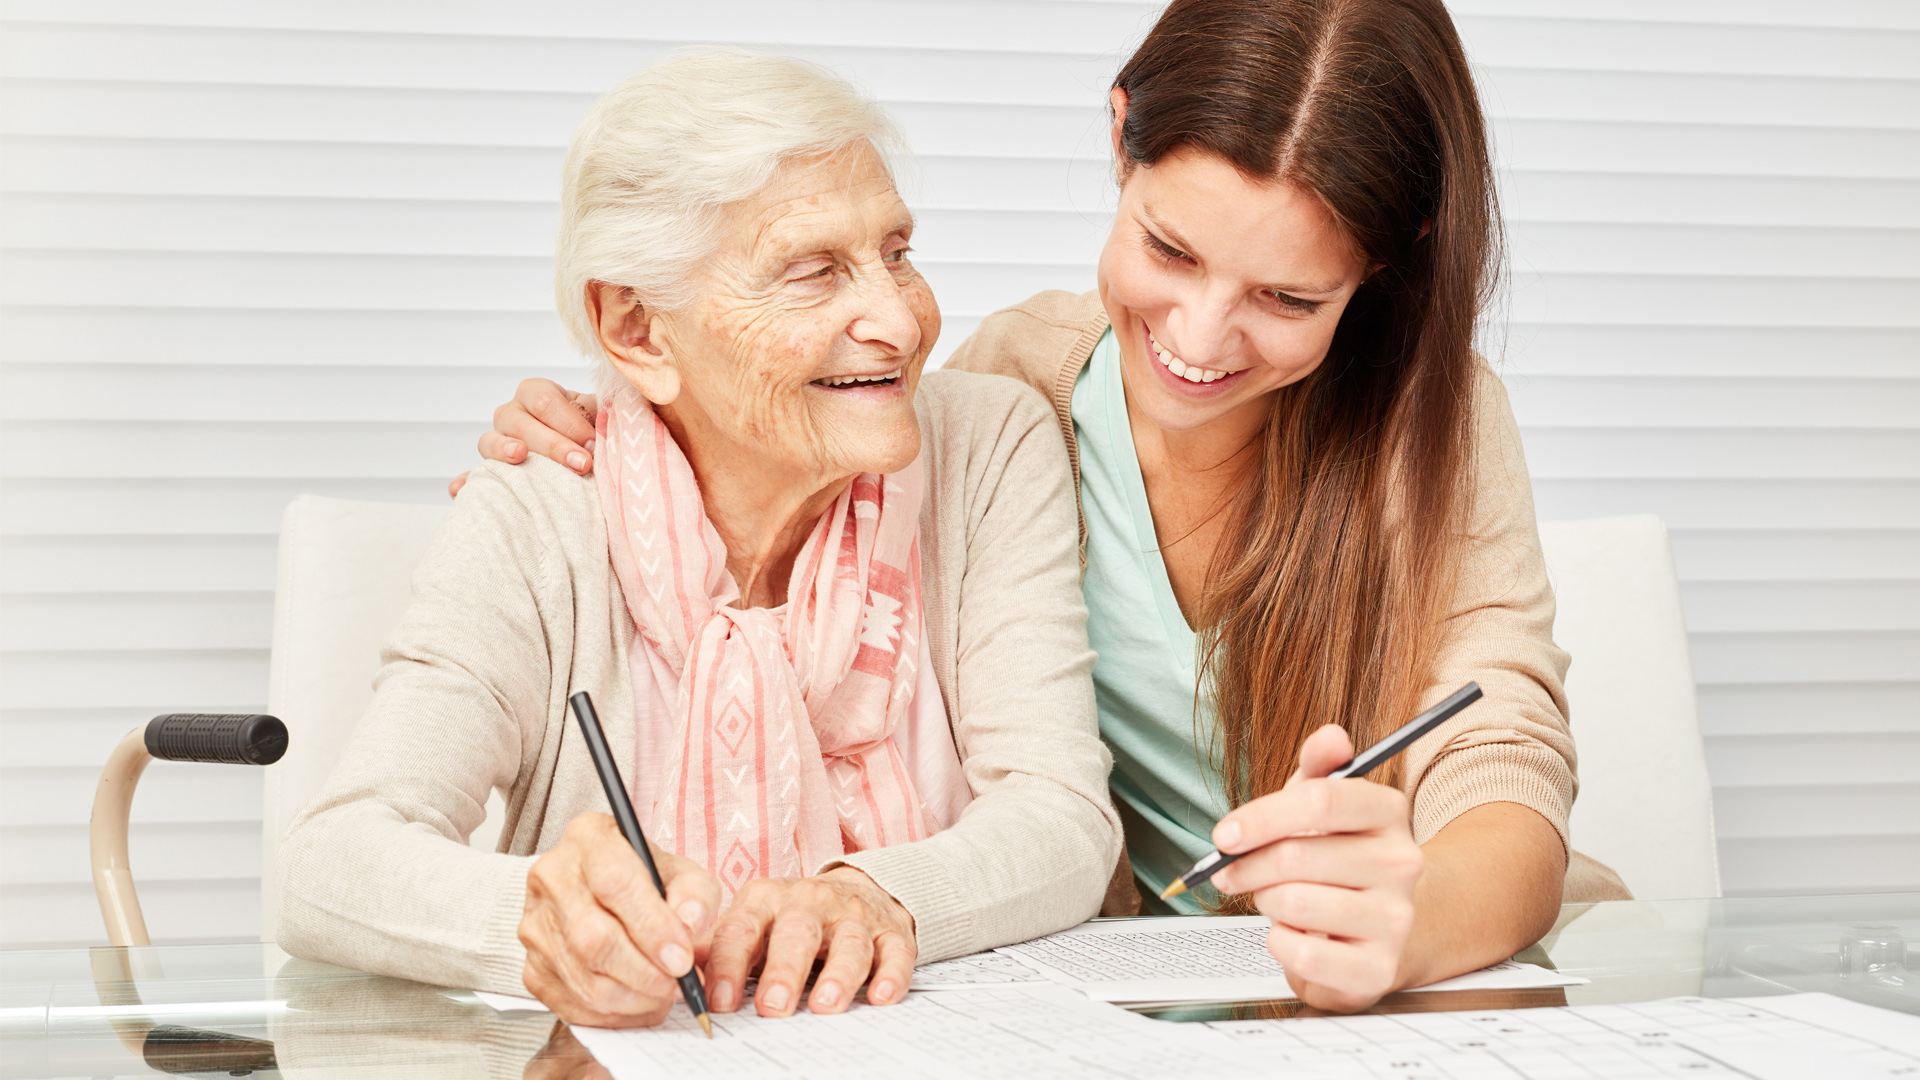 Junge Person hilft lächelnd einer älteren Person beim Ausfüllen von Formularen.